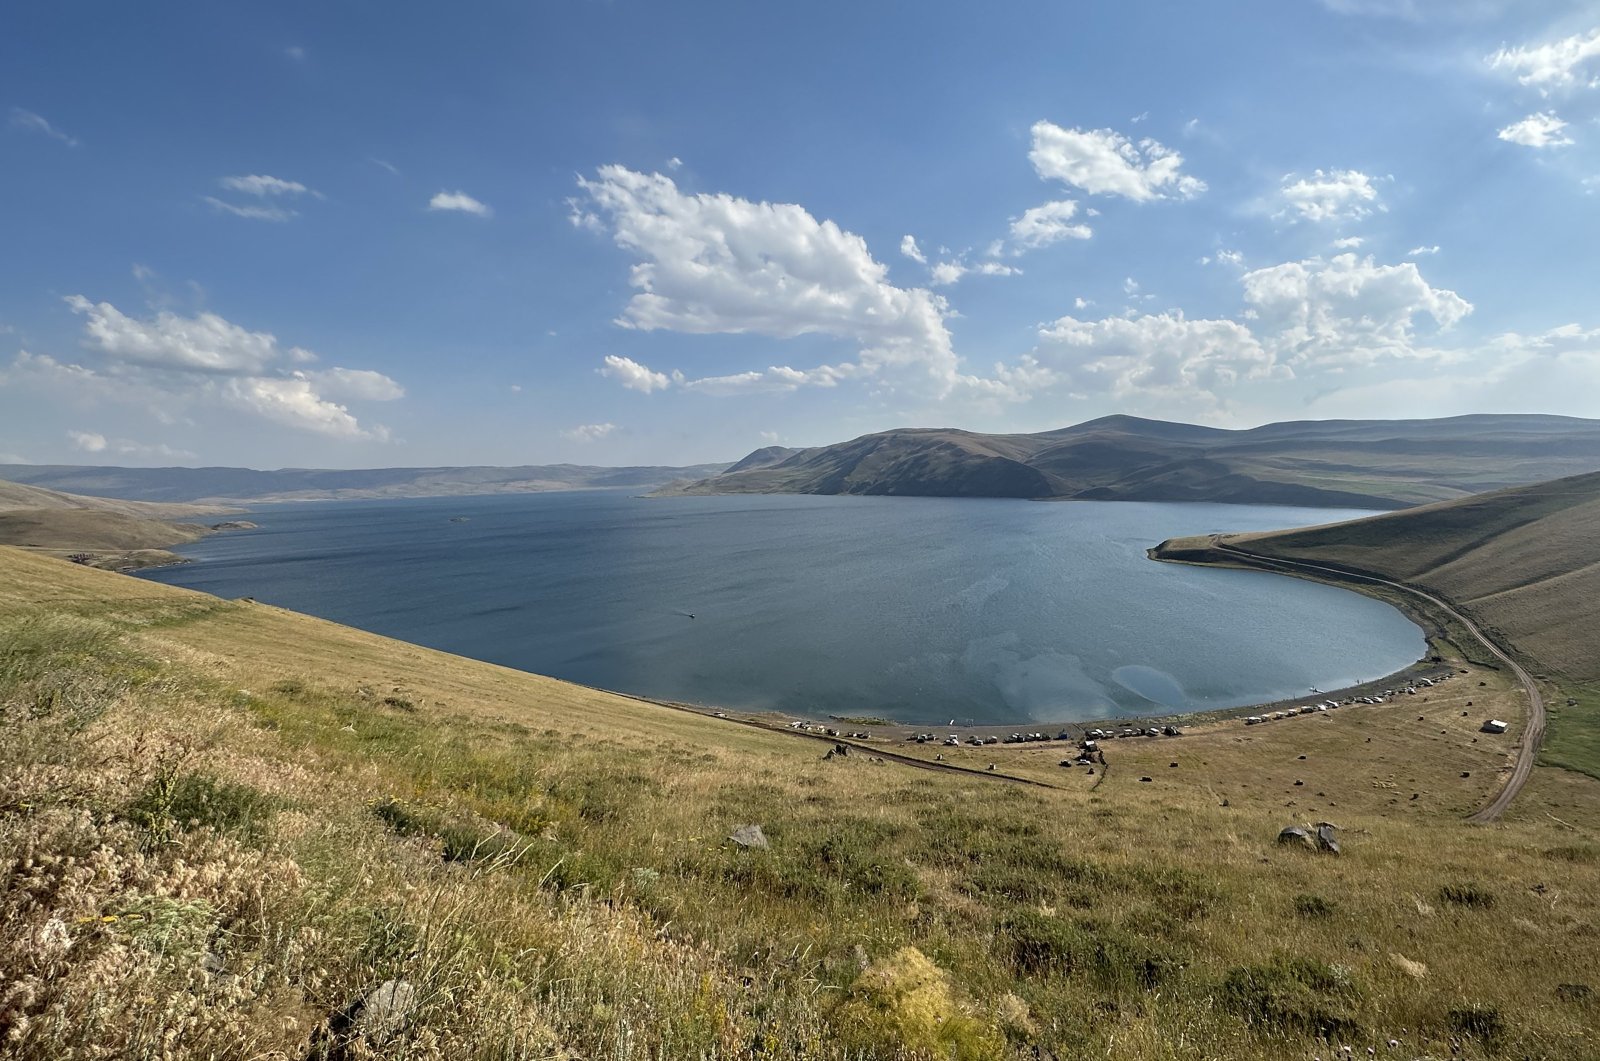 Heat-weary seek refuge in cool water of E. Türkiye’s Balık Lake